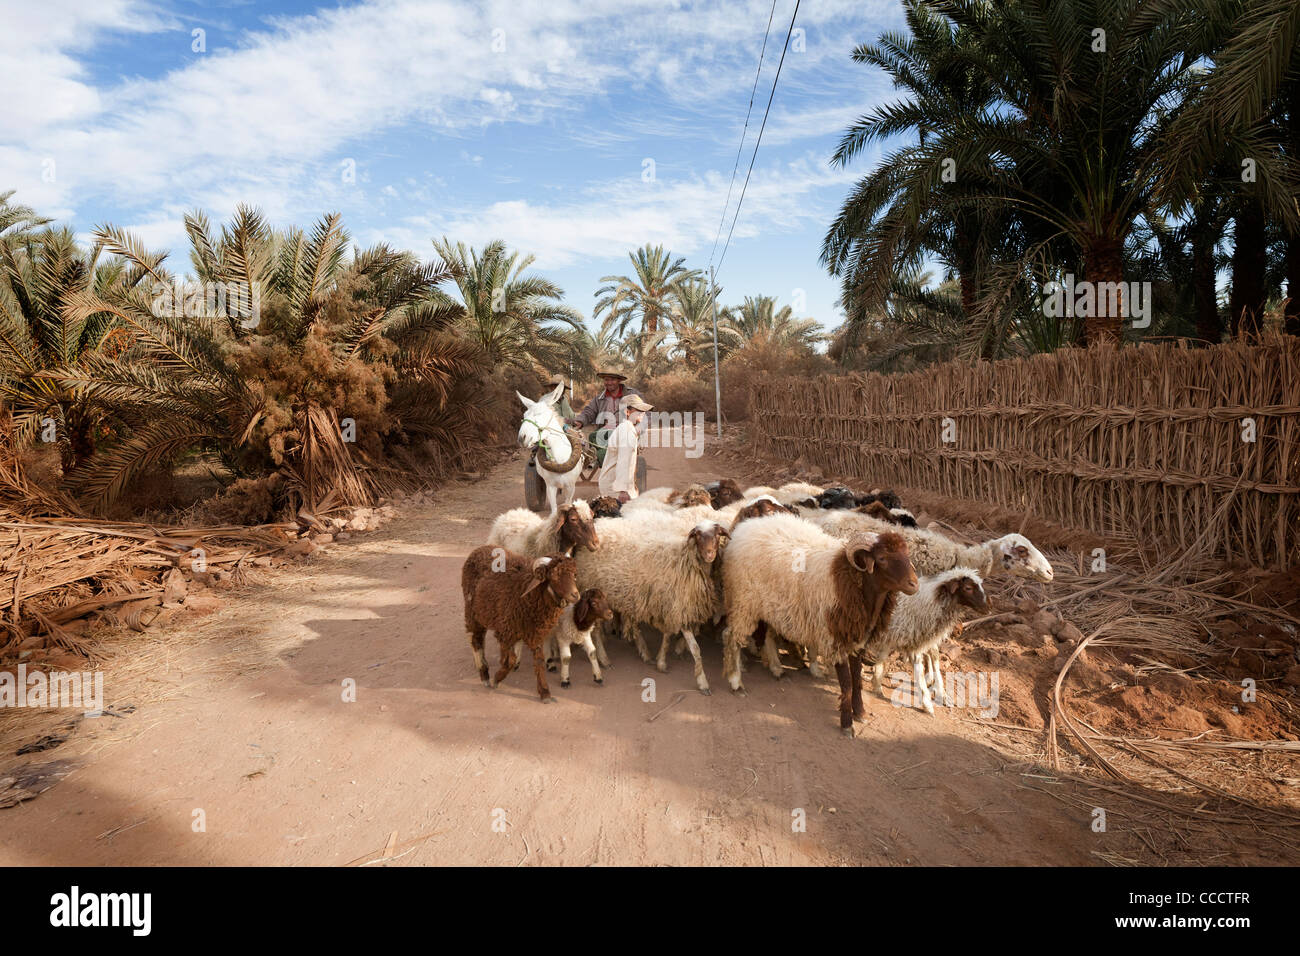 El hombre en el carro tirado por burro con su rebaño de ovejas y cabras en Dakhla Oasis del desierto occidental de Egipto Foto de stock